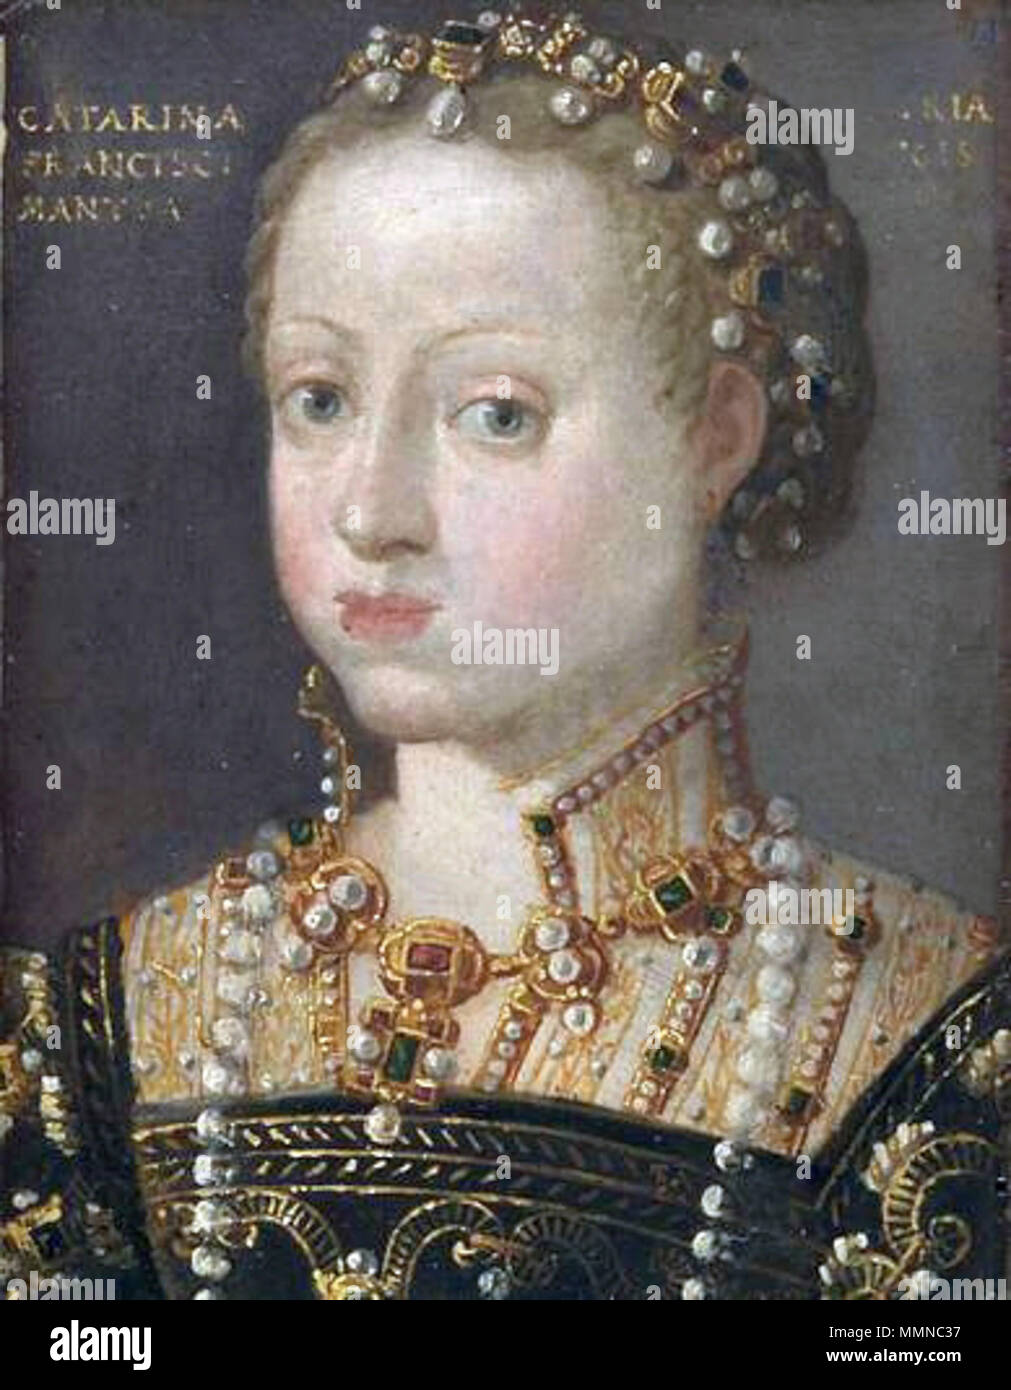 English: Portrait of Catherine of Austria (1533-1572), Queen of Poland. Polski: Portret Katarzyny Austriaczki (1533-1572), królowej Polski. 1550s. Katarzyna Austriaczka Stock Photo